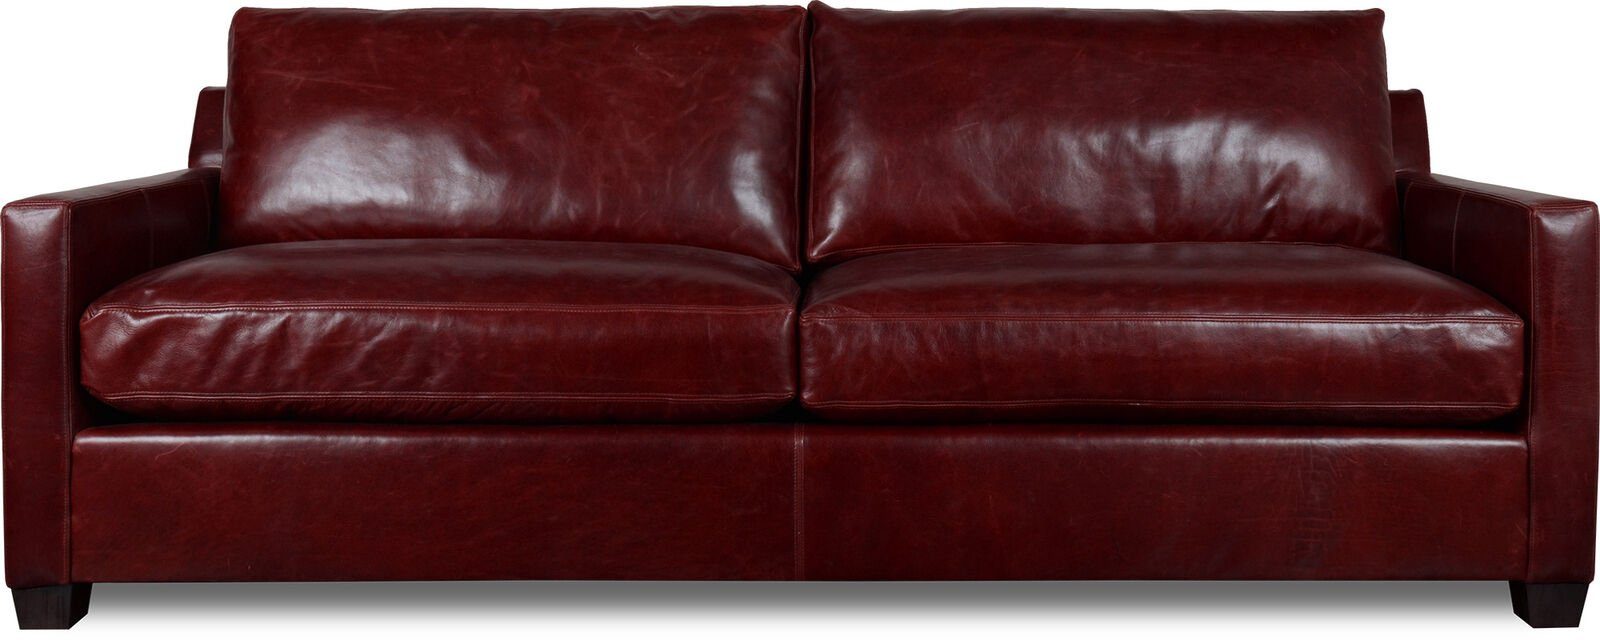 JVmoebel 3-Sitzer XXL Sofa 3 Sitzer Couch Polster Sitz Garnitur Leder Rot Sofas Neu, Made in Europe